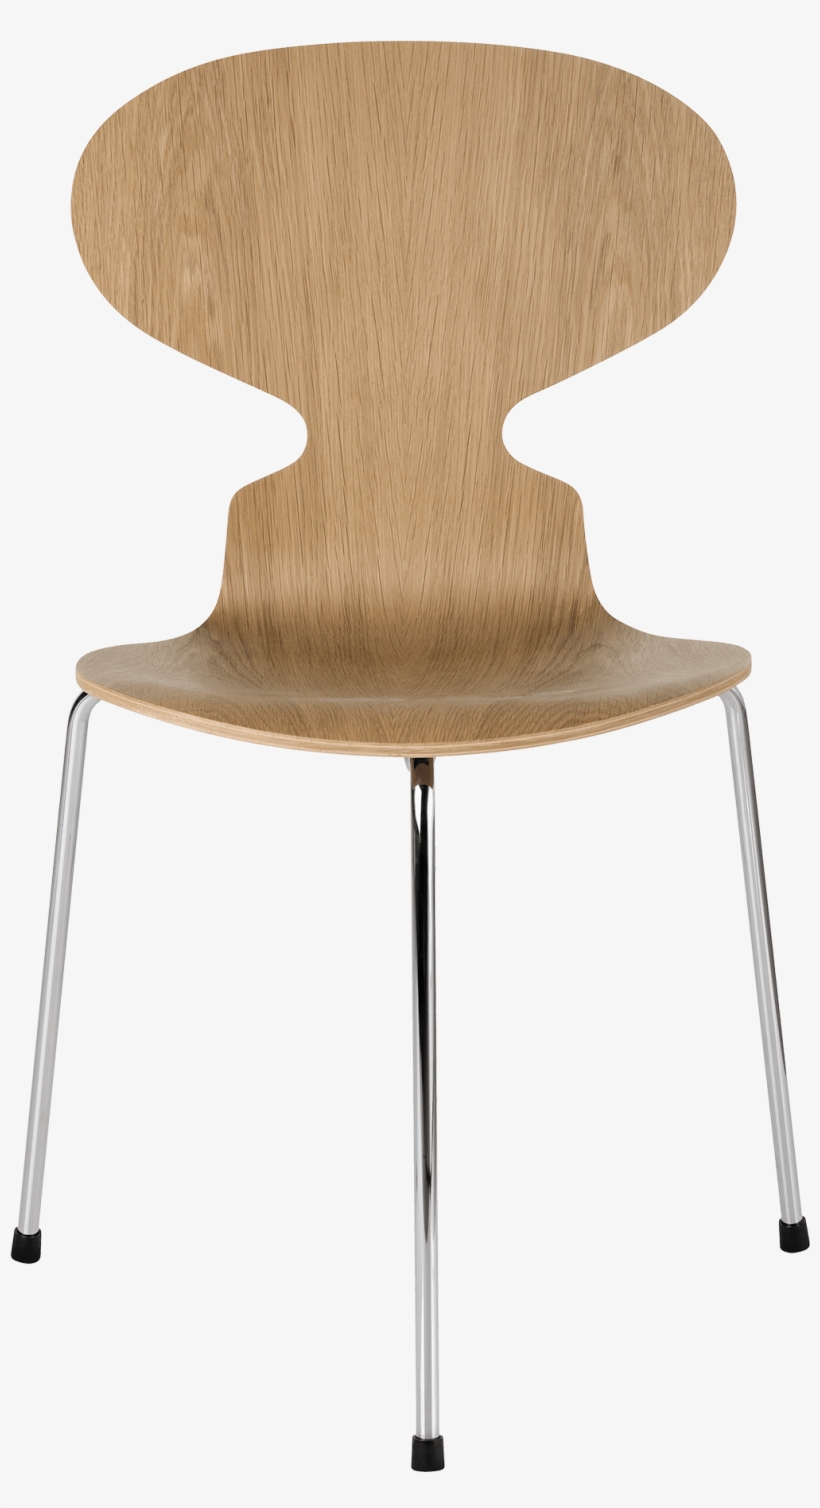 Ant Chair Arne Jacobsen Oak Veneer - Ant Chair Arne Jacobsen, transparent png #2765428